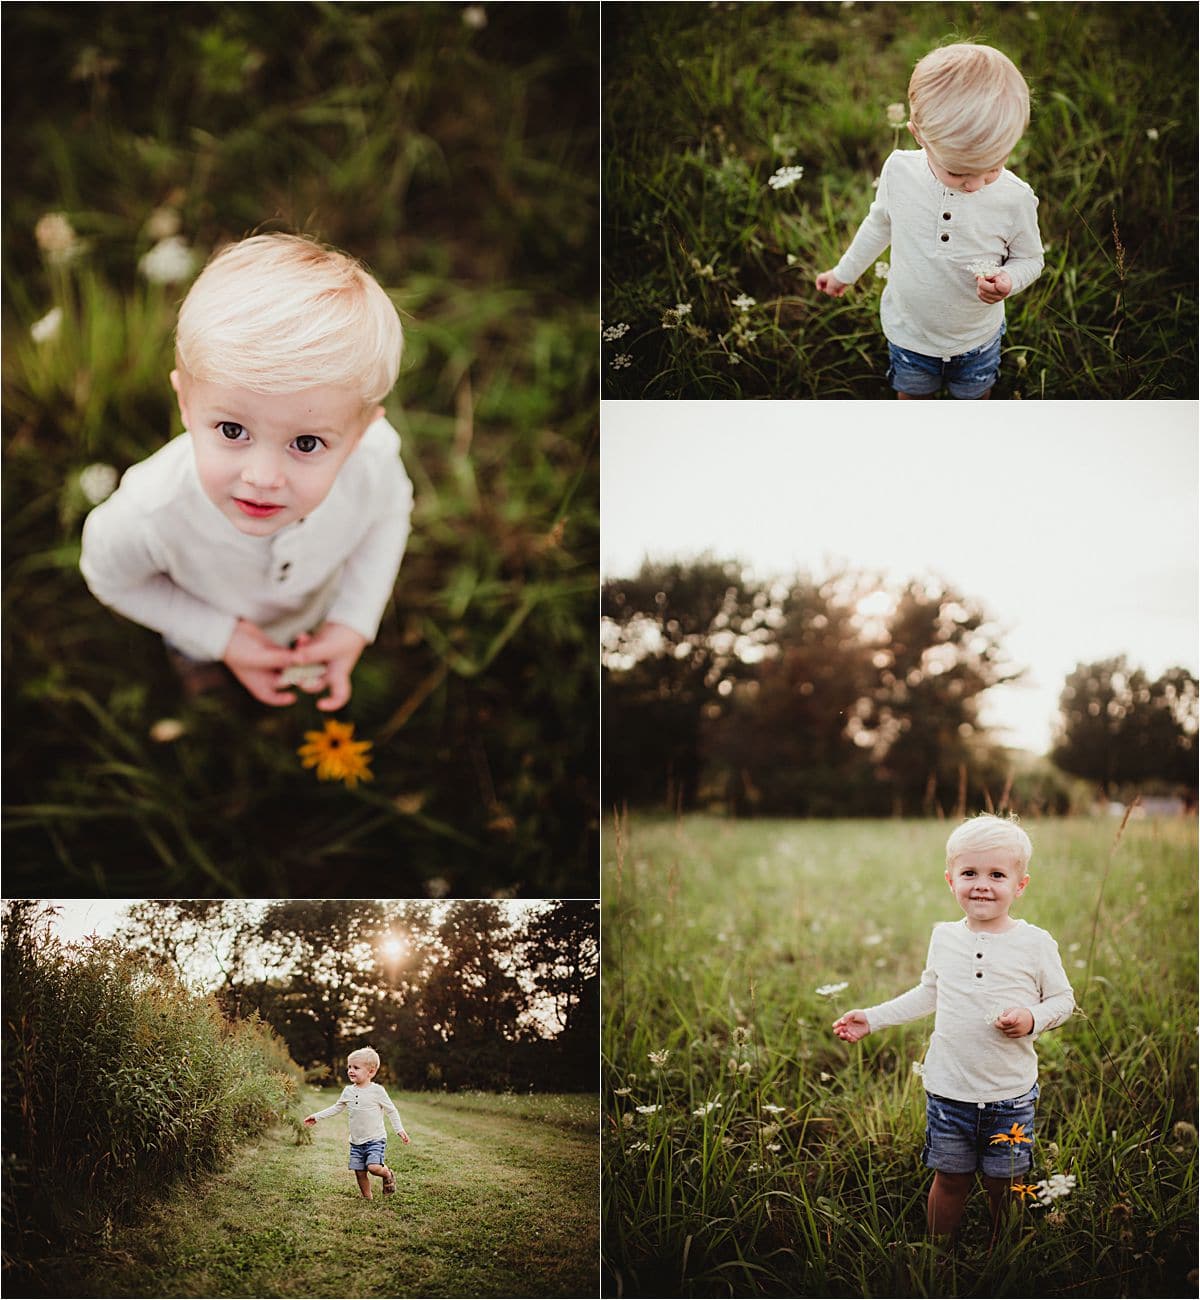 Little Boy Playing in Field